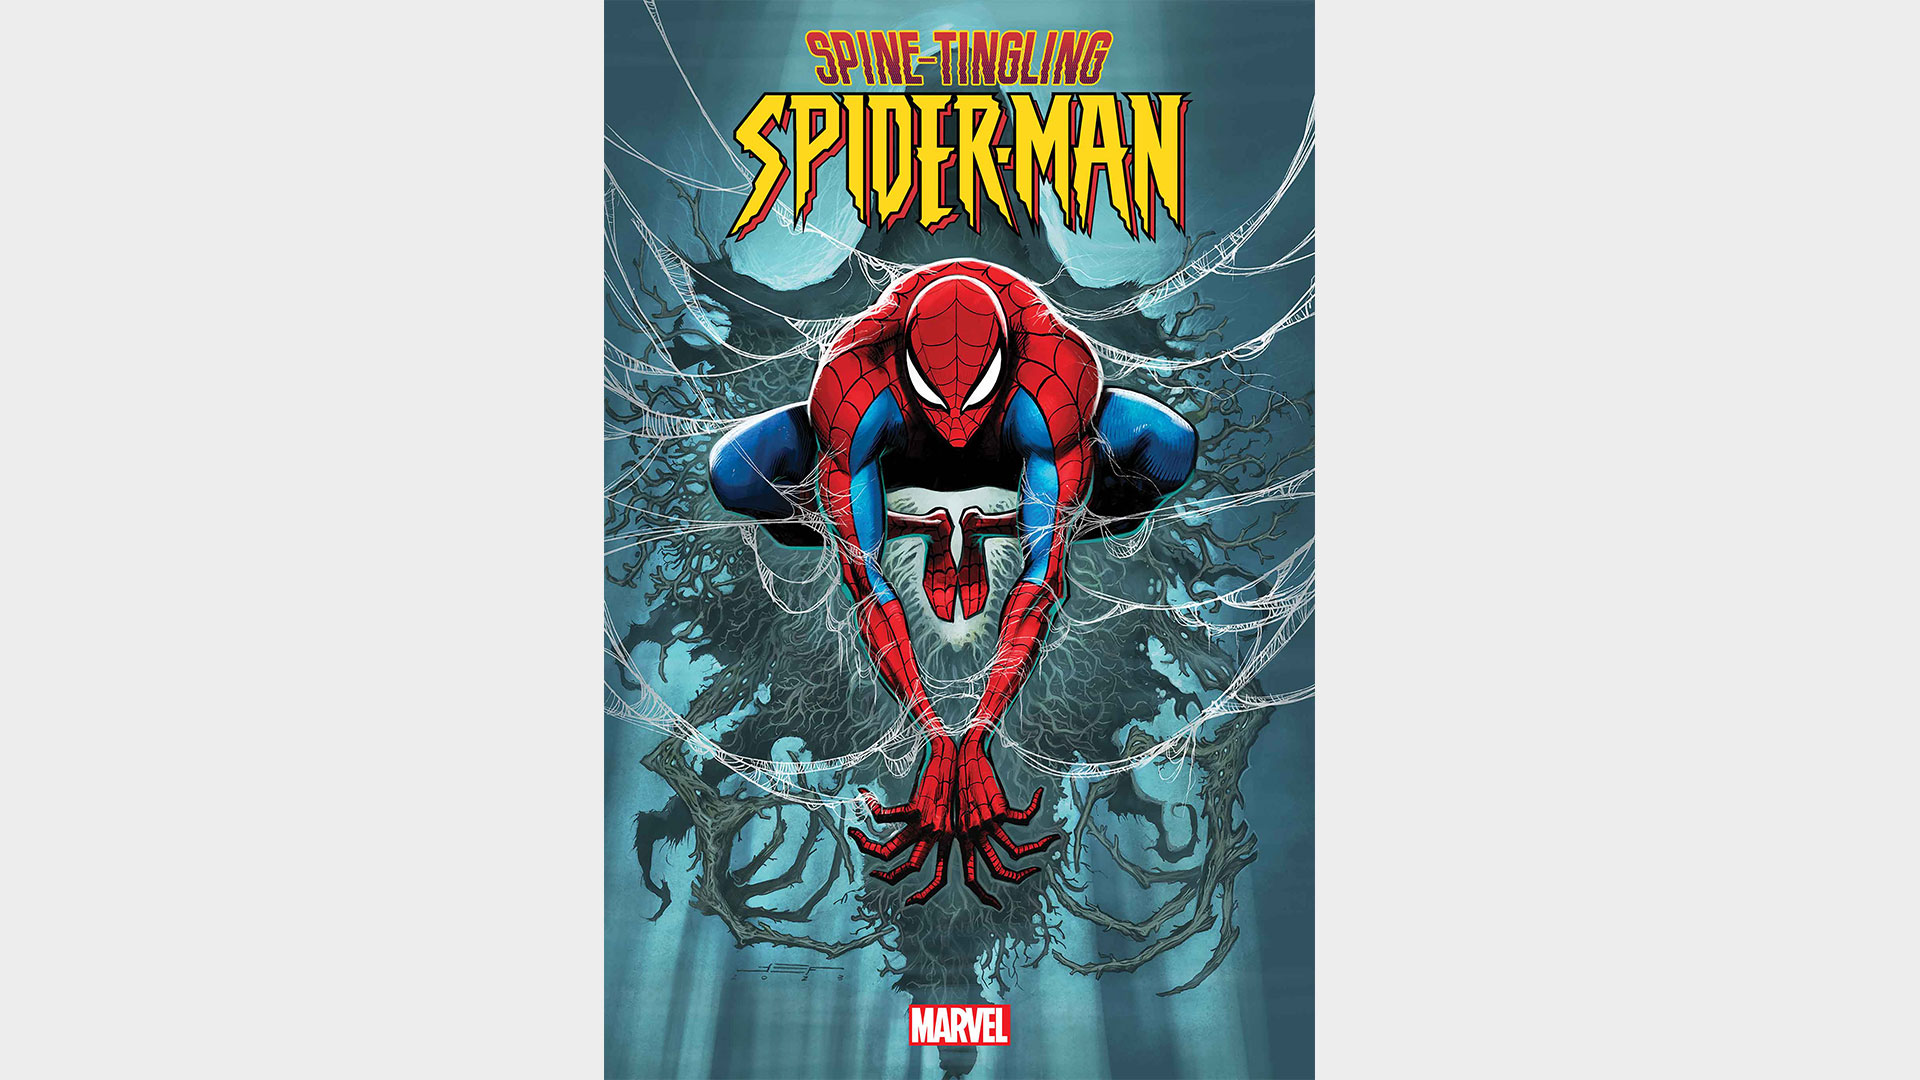 Spine-tingling Spider-Man #0 portada